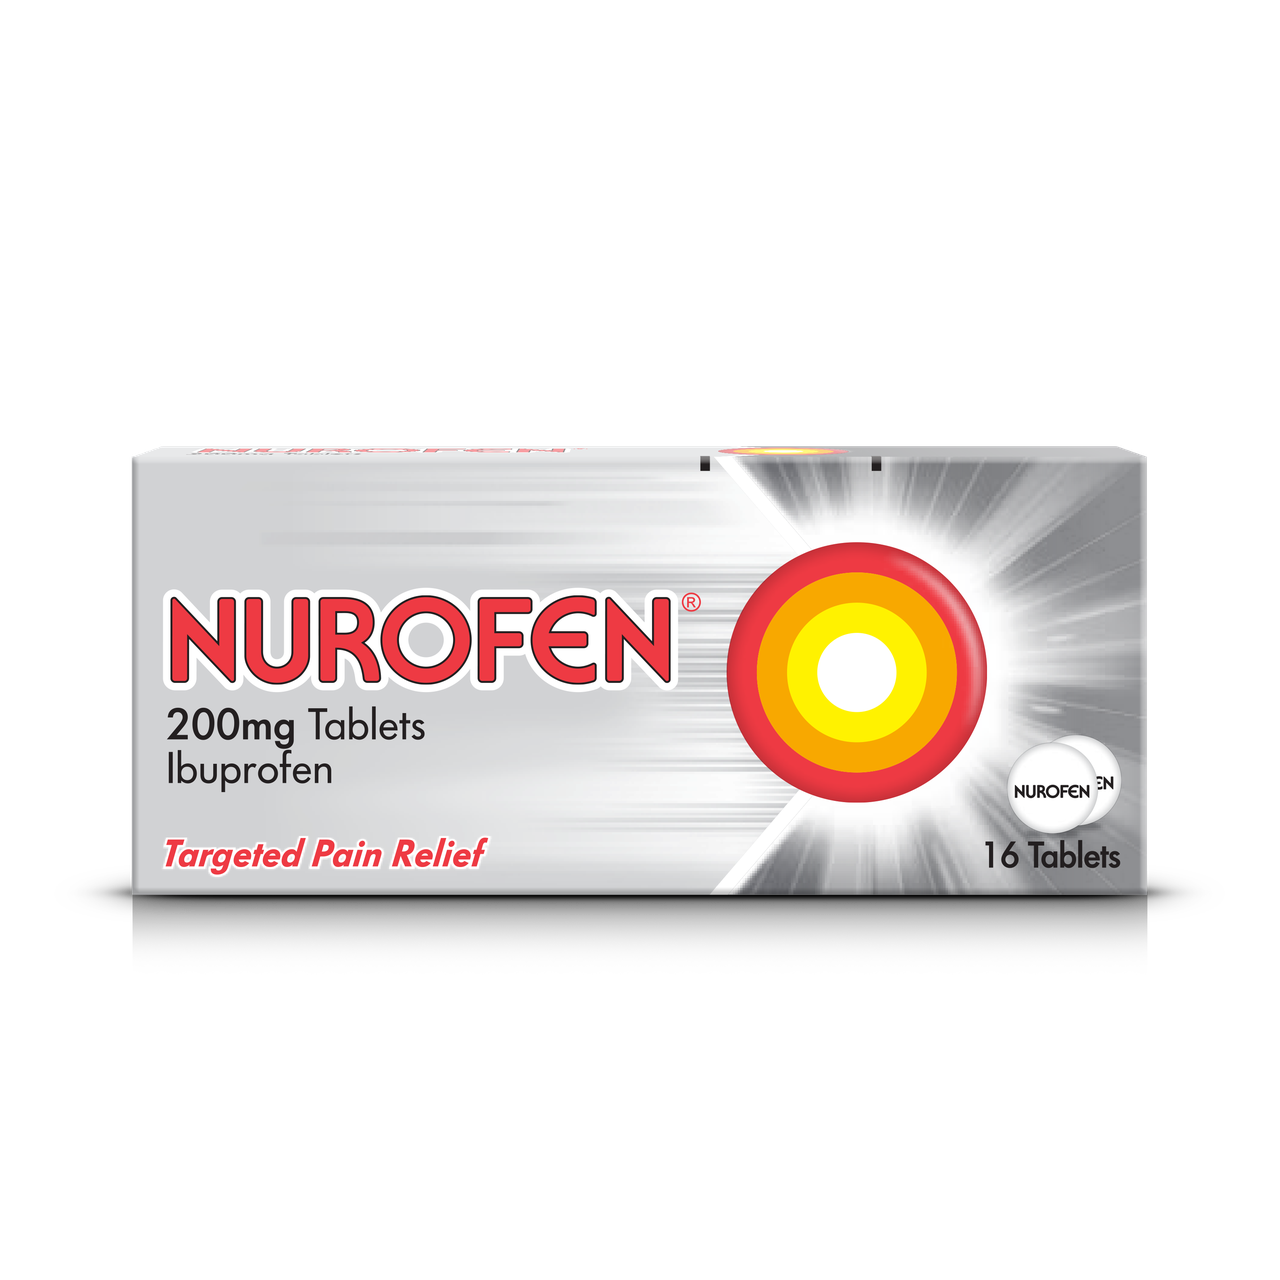 nurofen-200mg-pain-relief-tablets-nurofen-uk